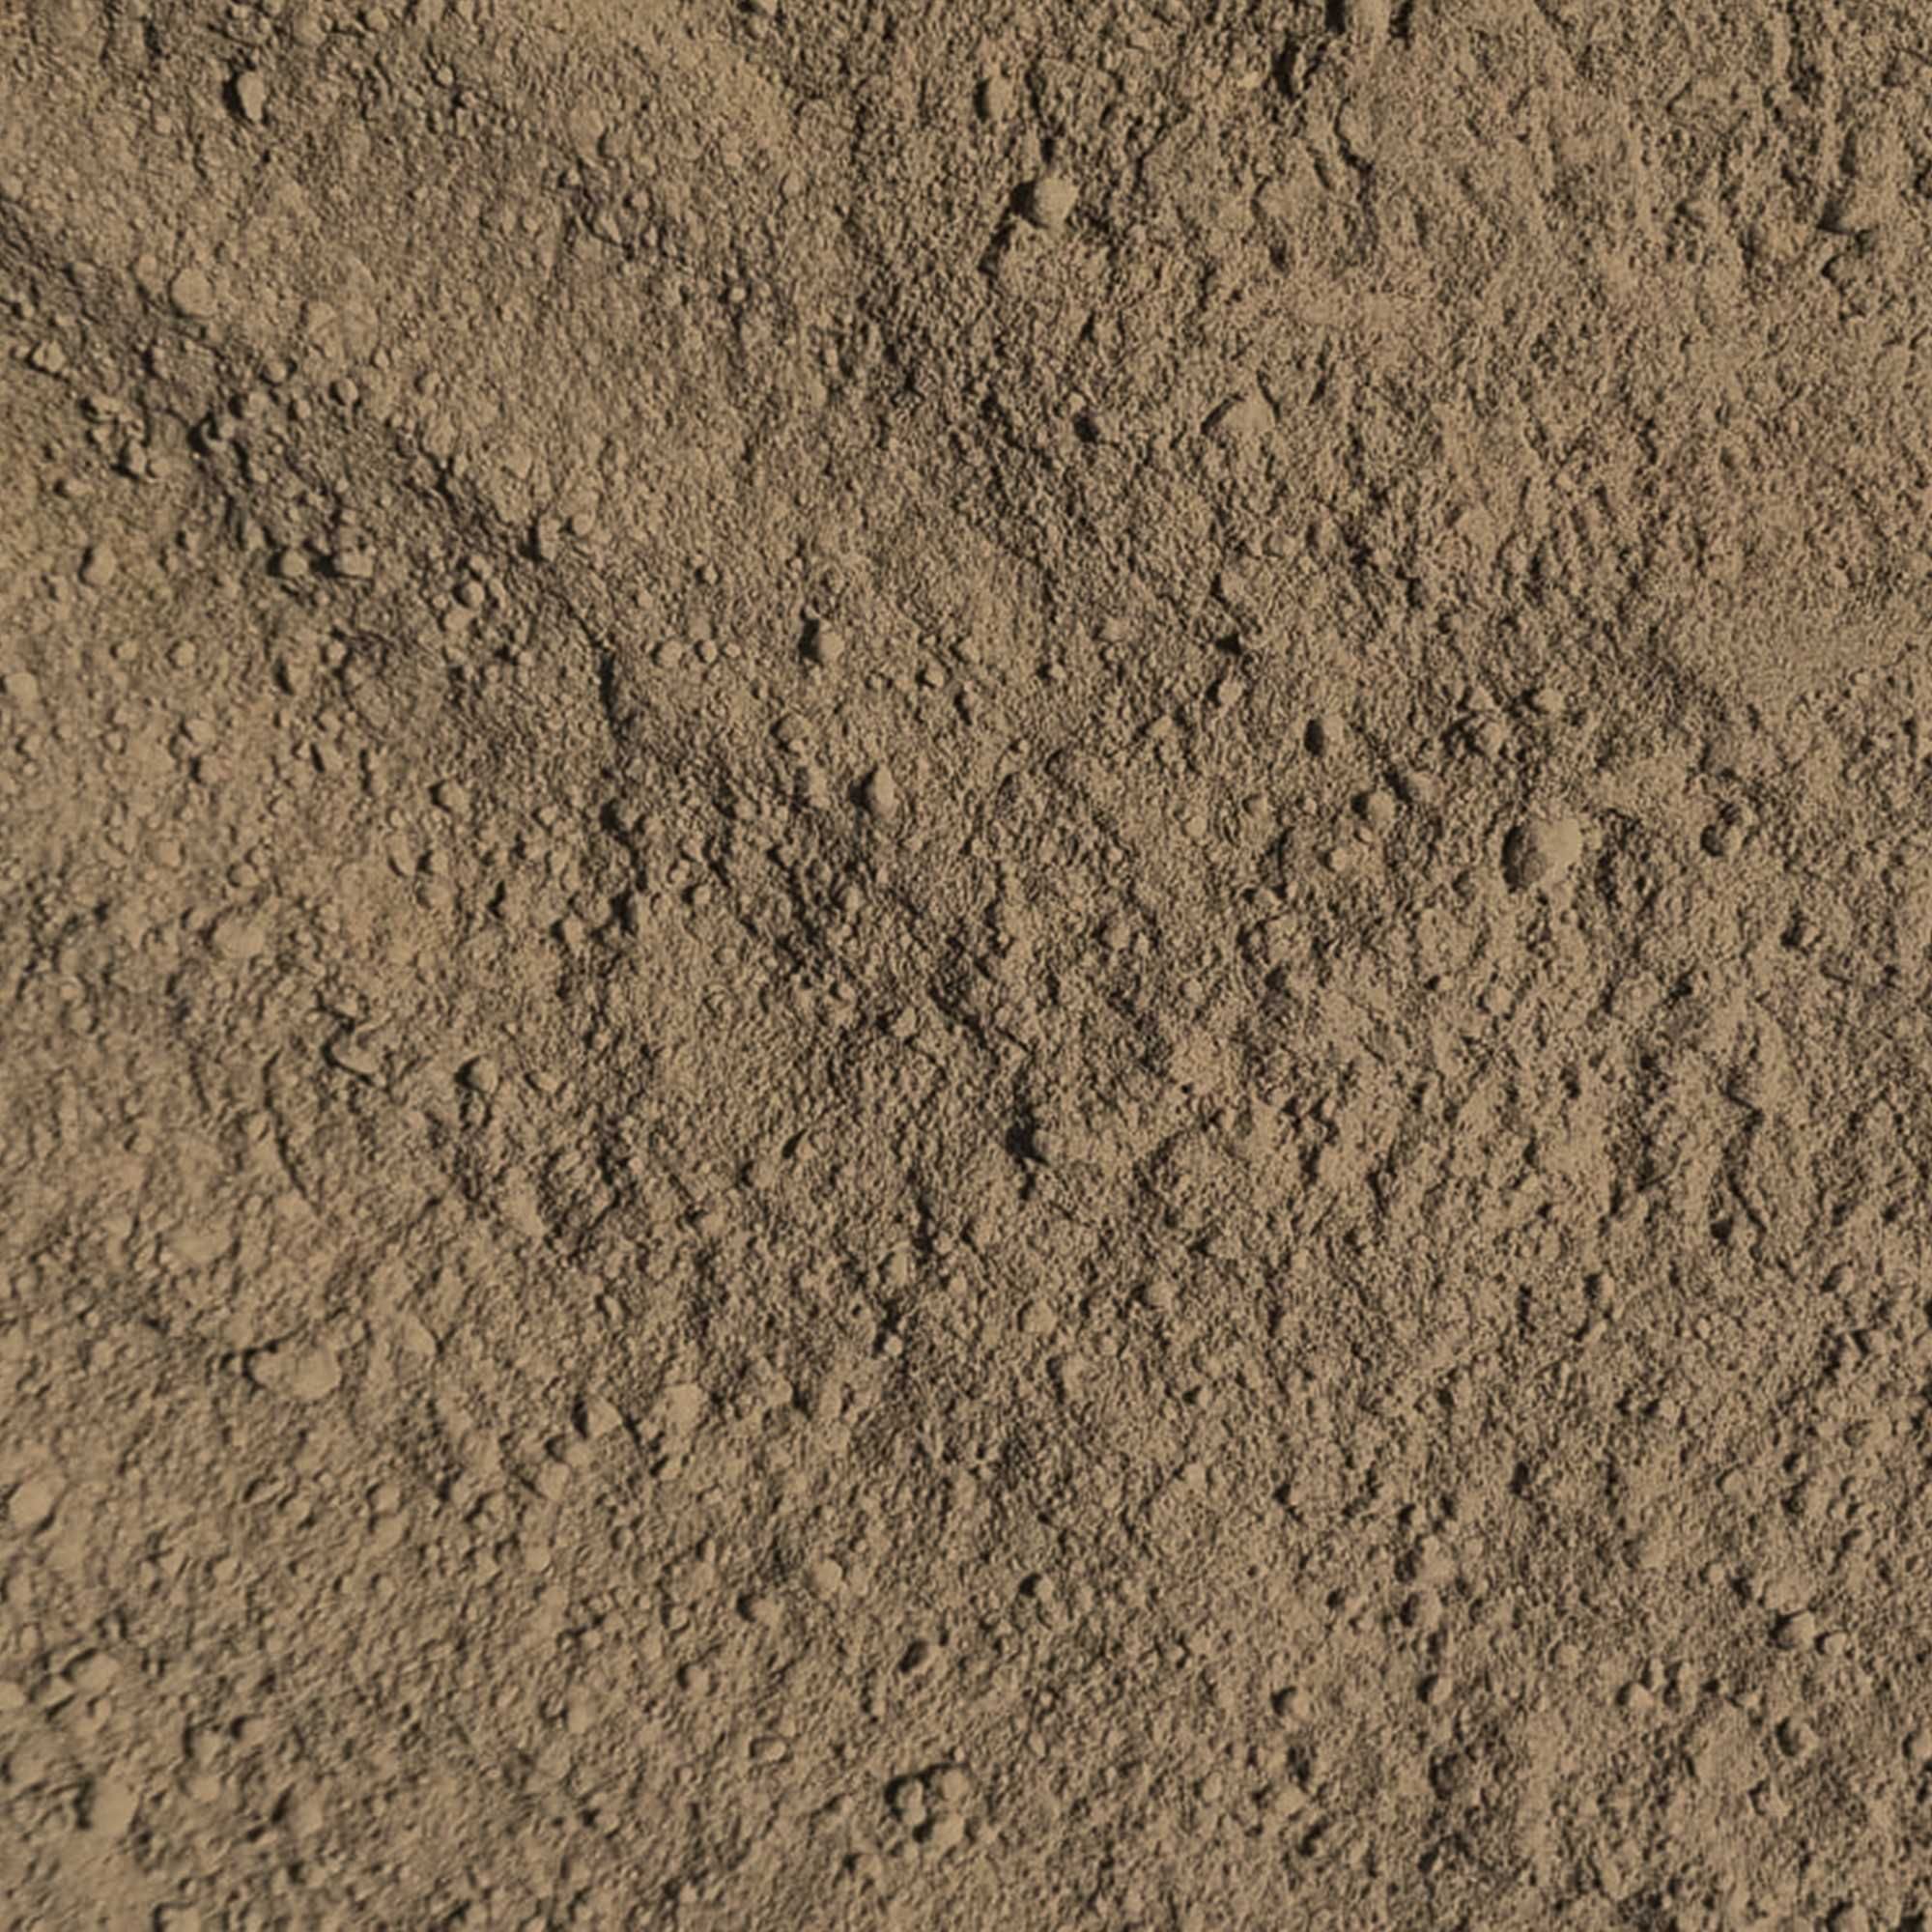 Naturalny nawóz pod WARZYWA - mączka bazaltowa, pył wulkaniczny